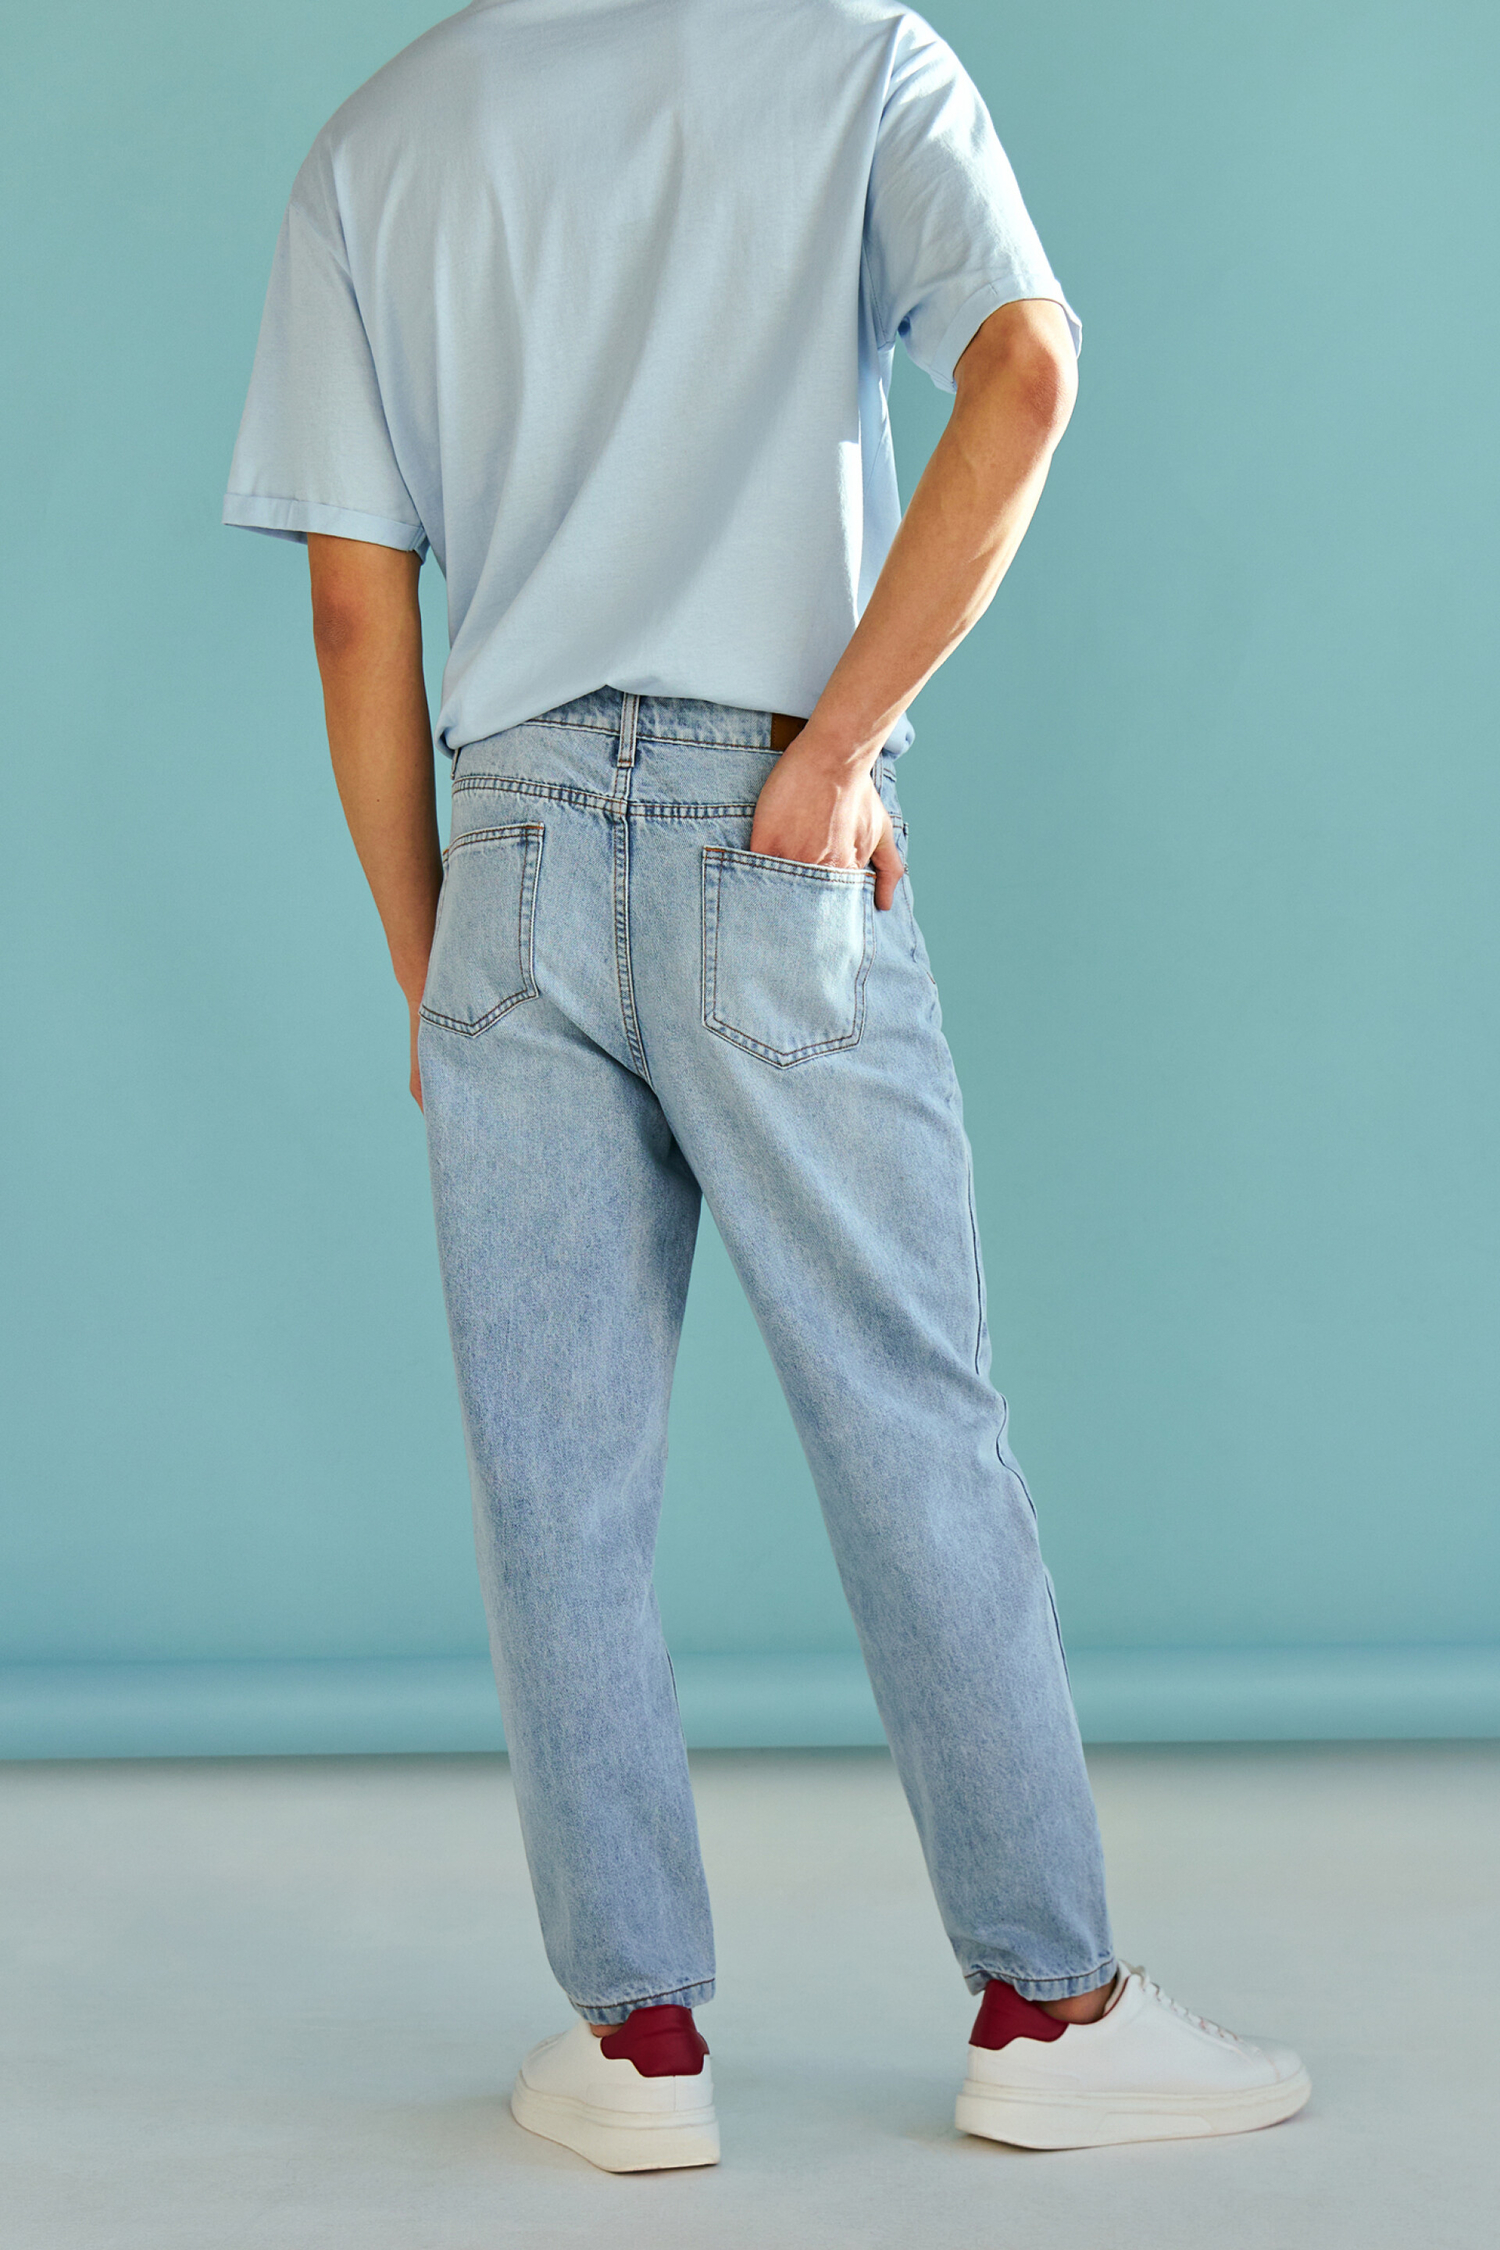 Брюки джинсовые мужские befree индиго (размер: 32) (2229425731$D) купить -SKU10713090